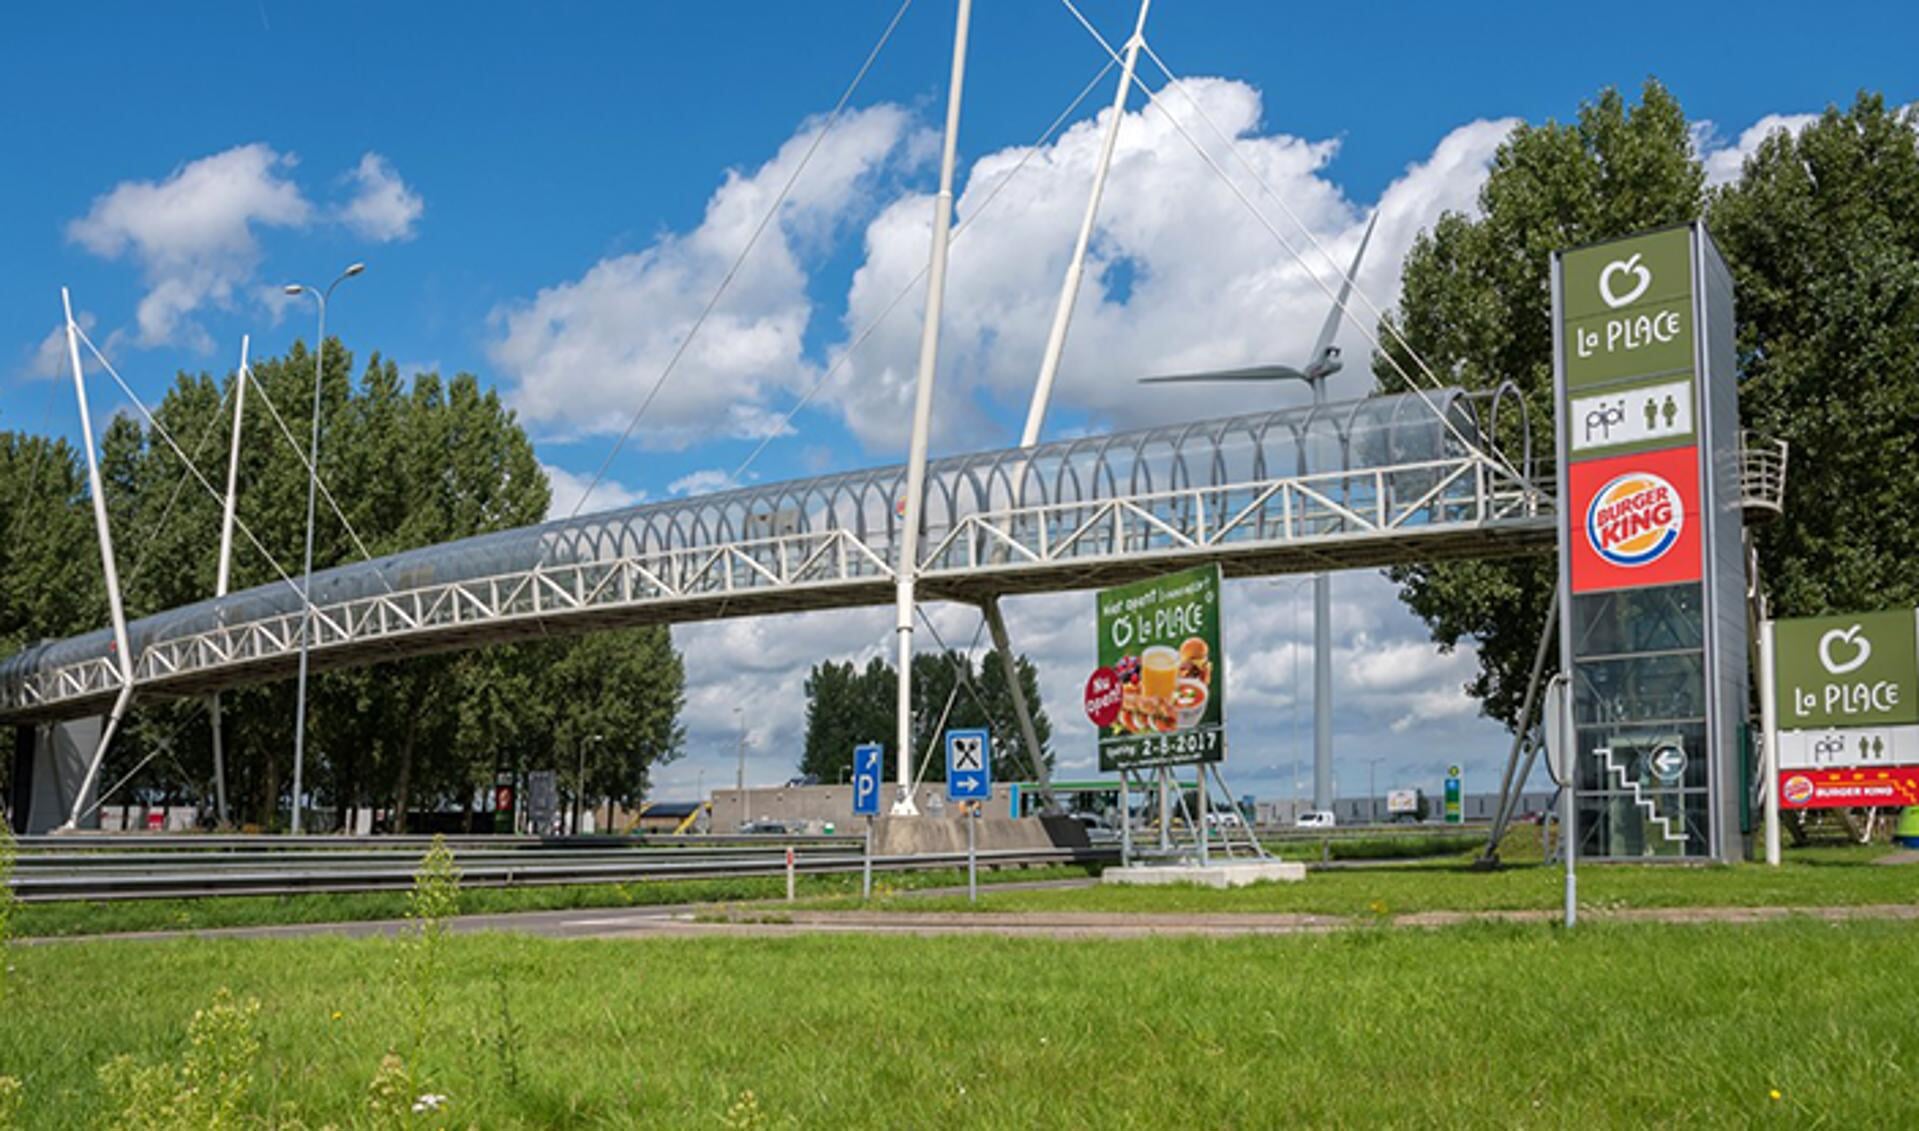 De voetgangersbrug is 72 meter lang, 3,2 meter hoog en gemaakt van staal.